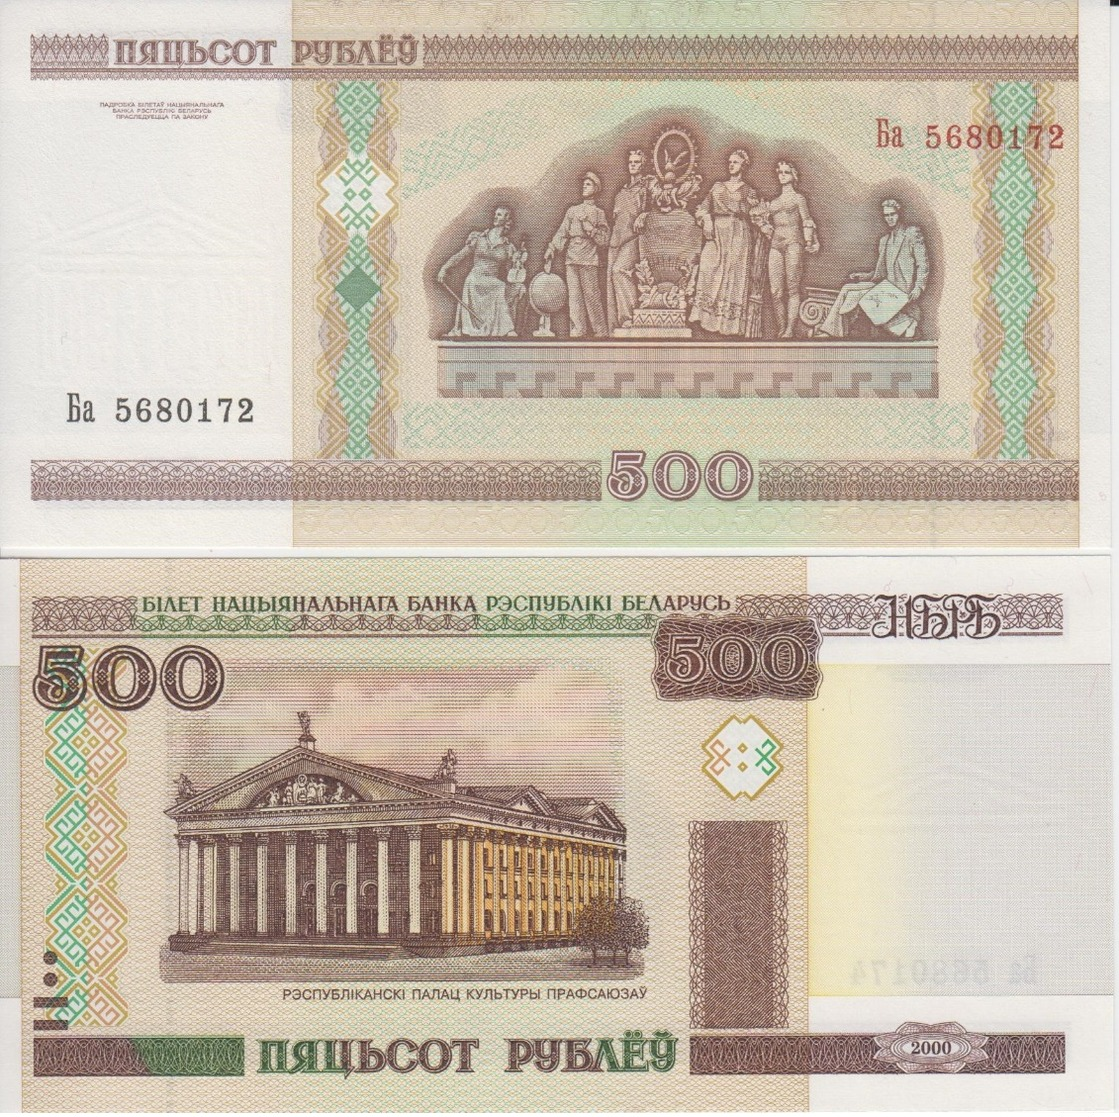 BELARUS 500 Rubles P 27 A 2000  UNC - Belarus